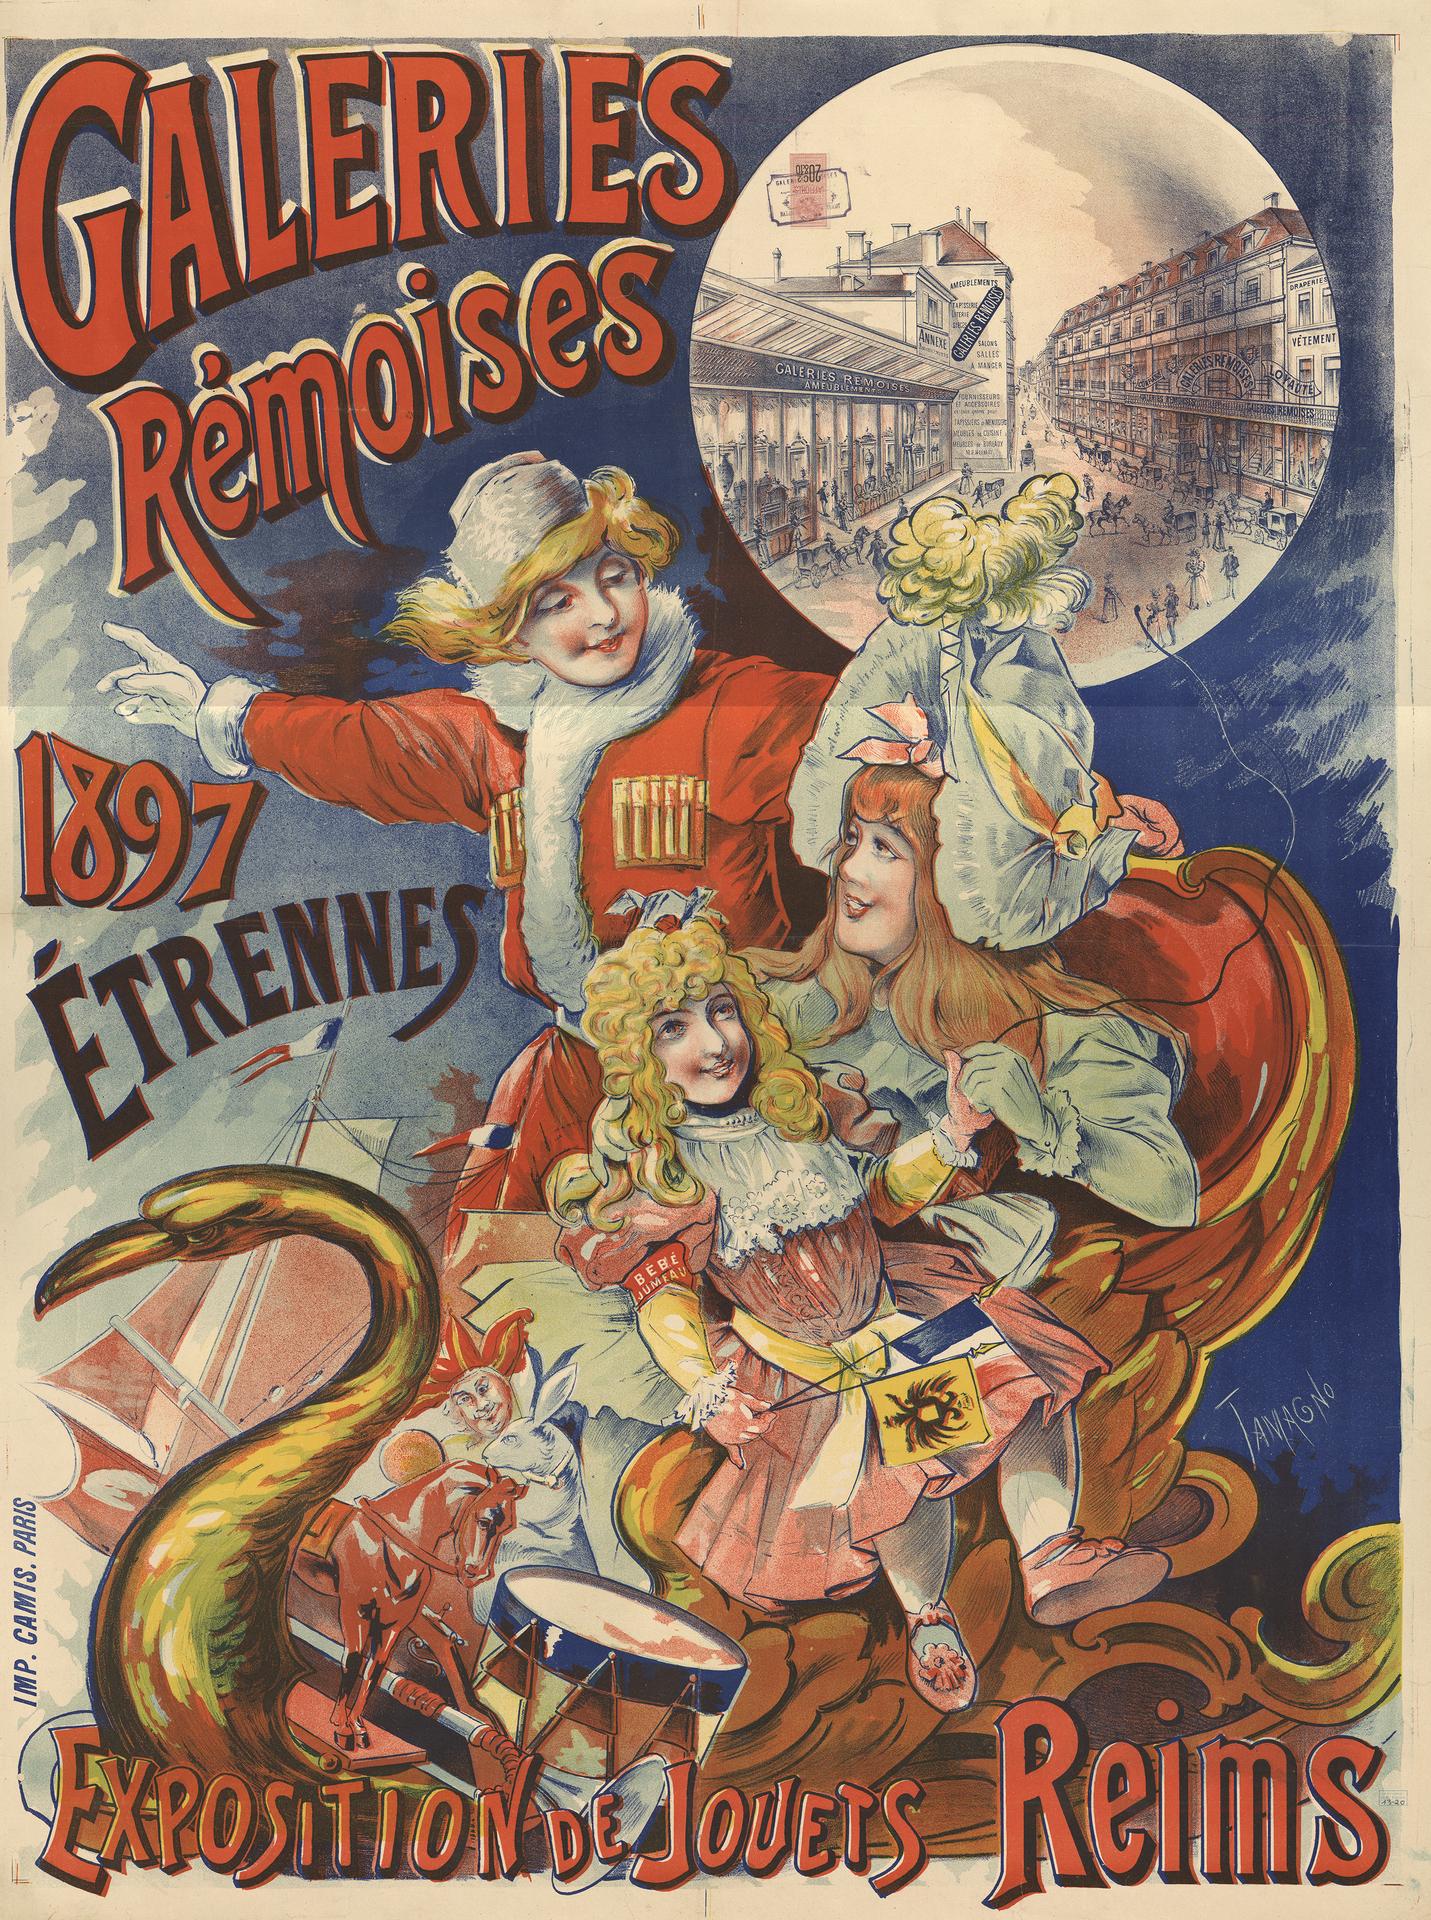 Affiche pour les Etrennes de 1897. Reims, Bibliothèque municipale, TGF VIII 20.